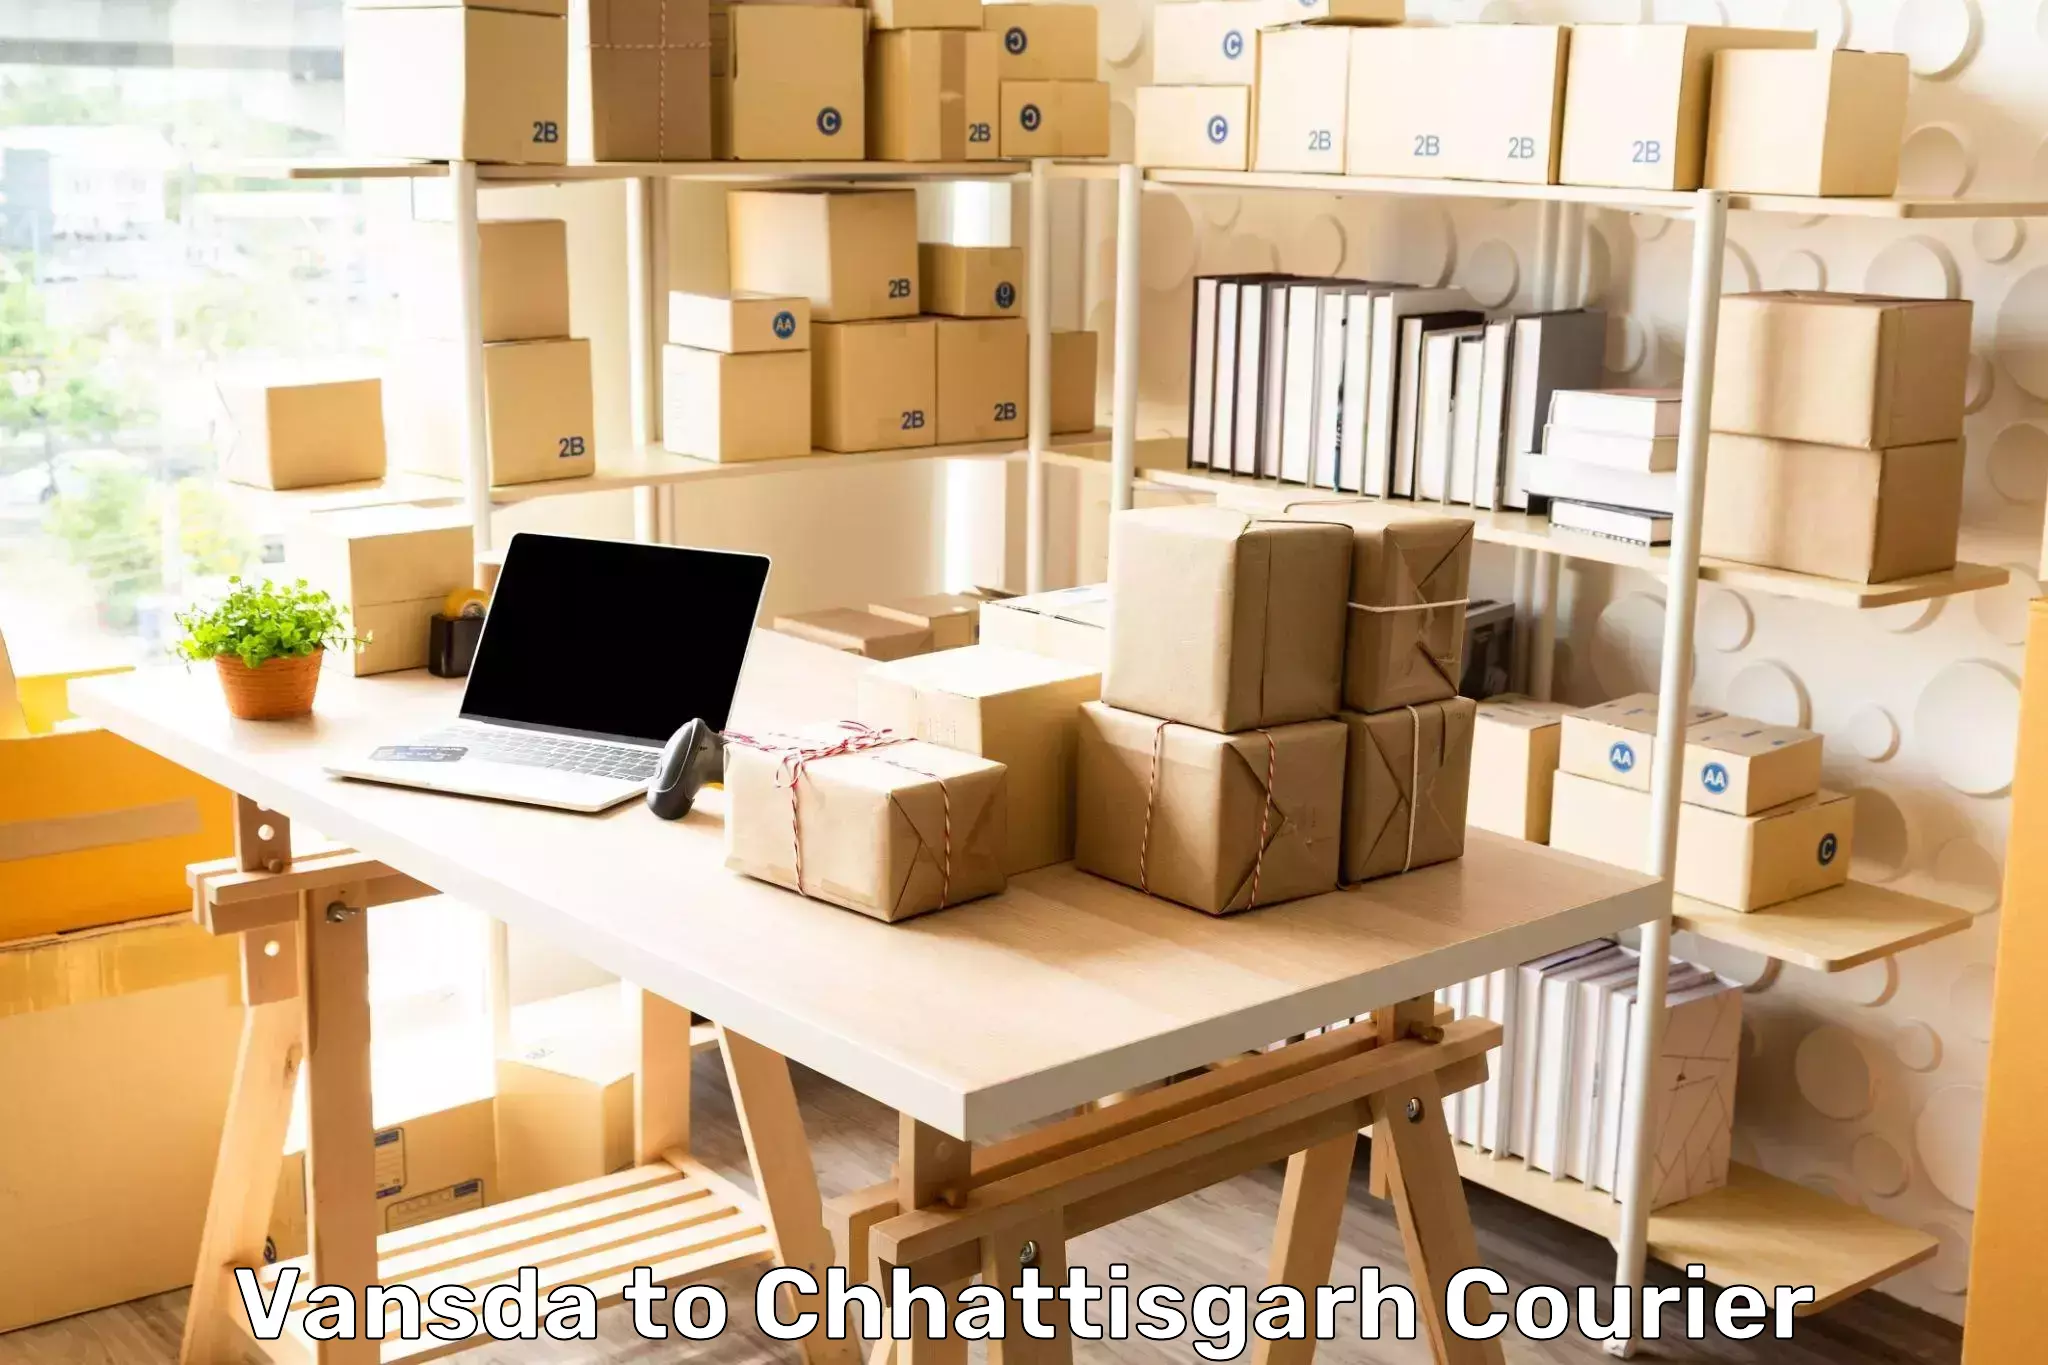 24/7 courier service Vansda to Chhattisgarh